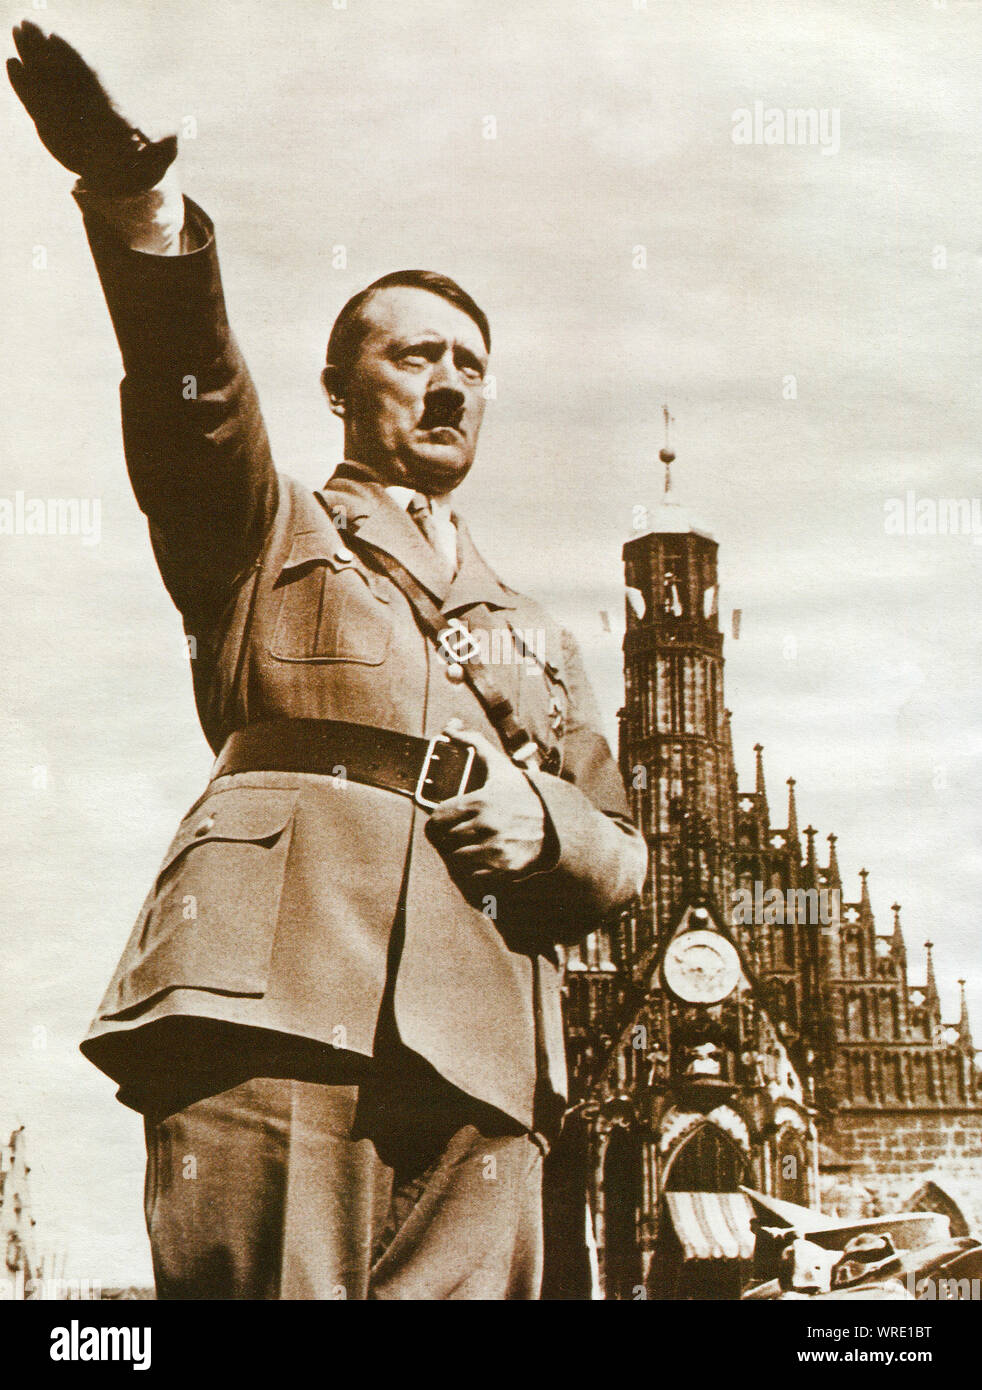 Allemagne, vers 1945 : hommage à Adolf Hitler à Berlin en 1945 - L'une de ses dernières photographies Banque D'Images